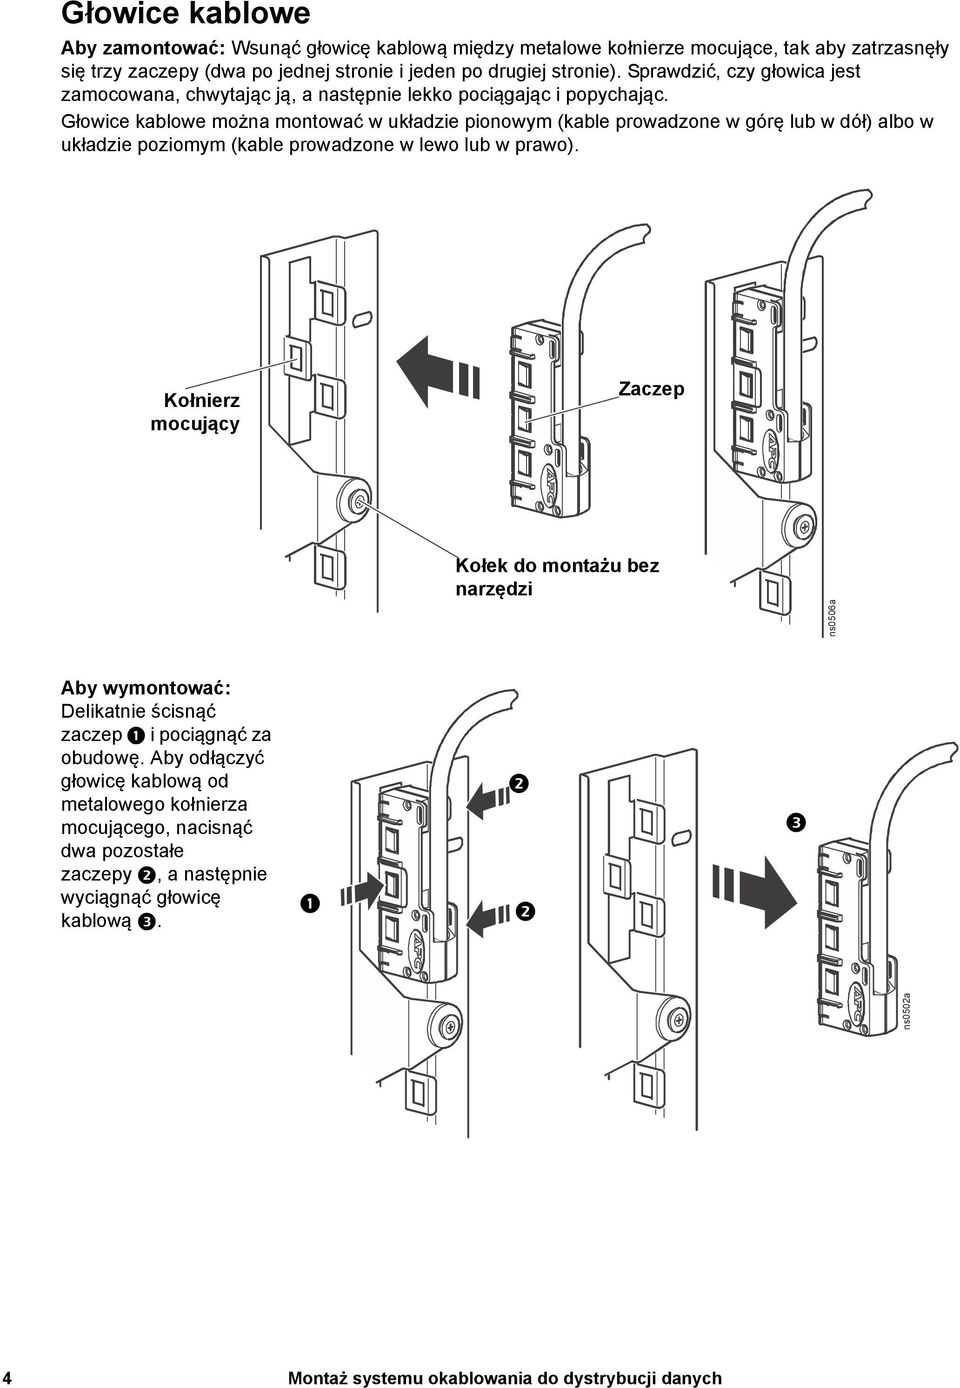 Głowice kablowe można montować w układzie pionowym (kable prowadzone w górę lub w dół) albo w układzie poziomym (kable prowadzone w lewo lub w prawo).